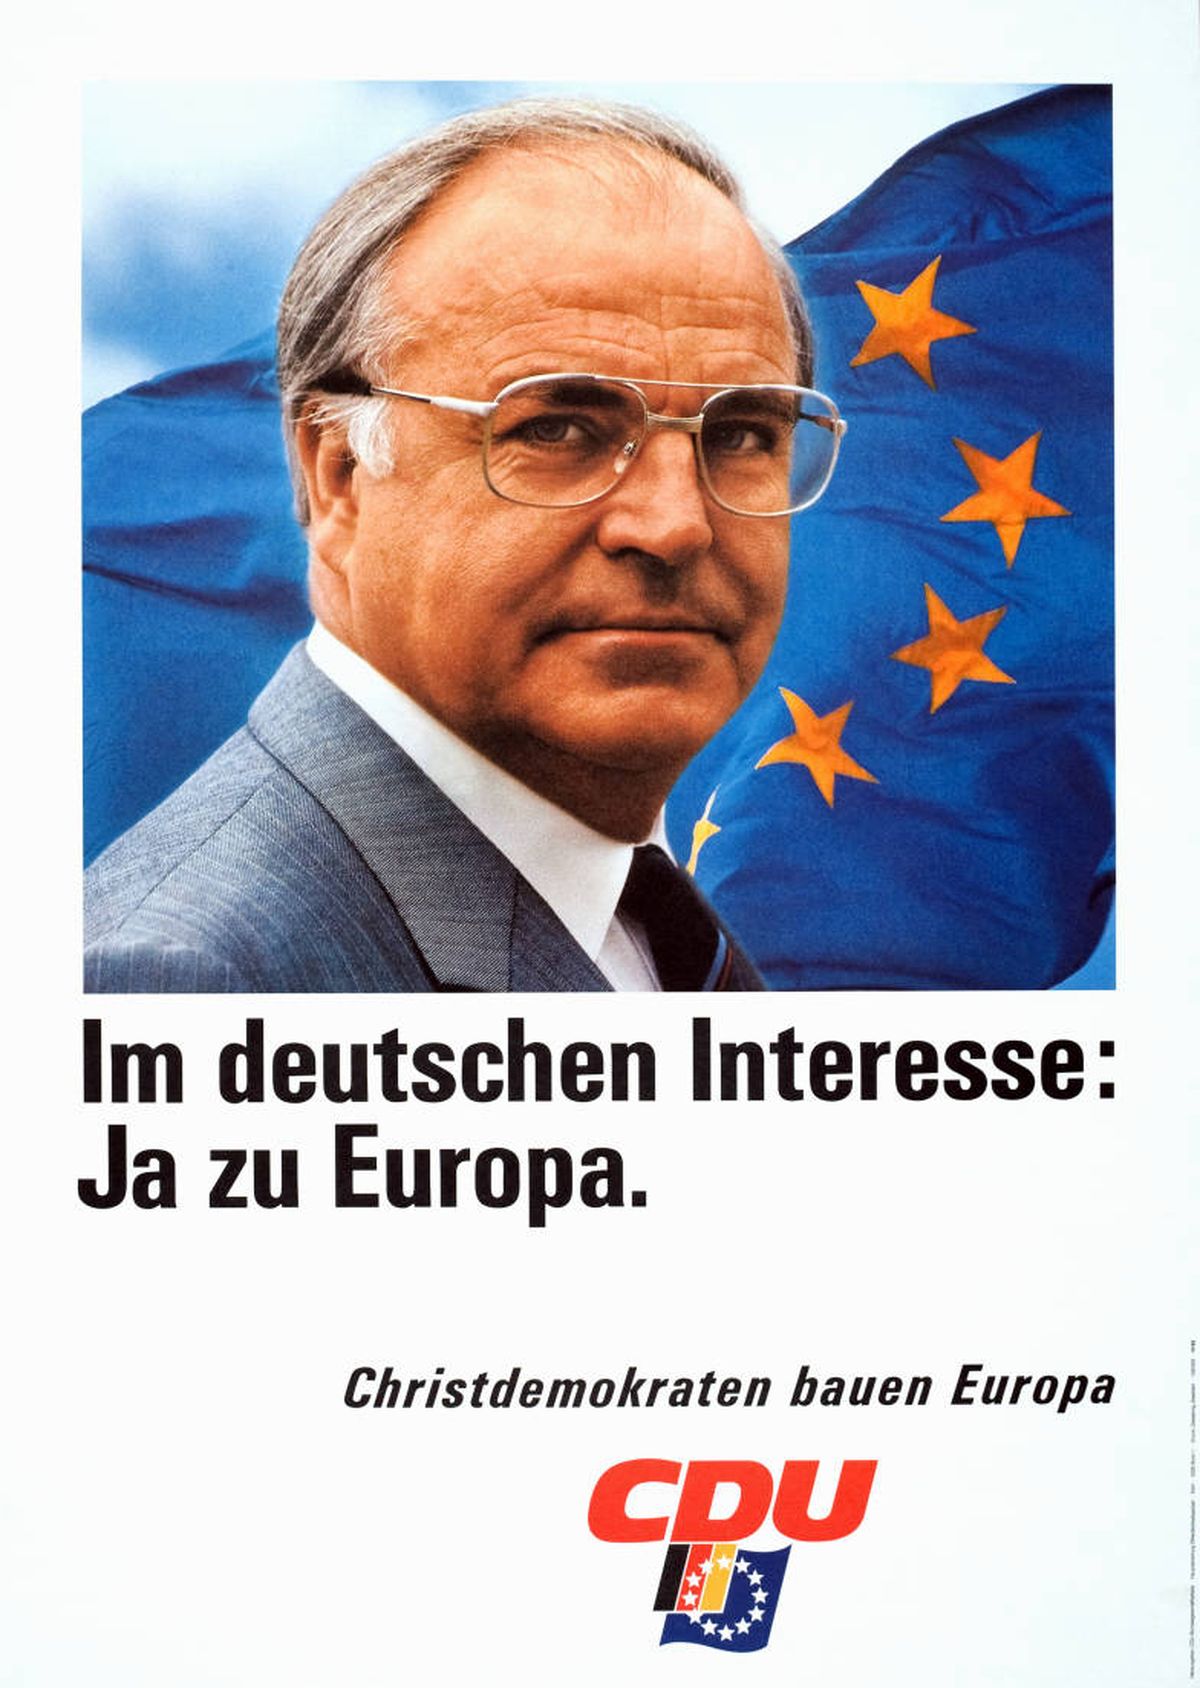 Канцлер Христианско-демократического союза Германии (ХДС) Гельмут Коль призывает избирателей поддержать свою партию на европейских выборах 1989 года.